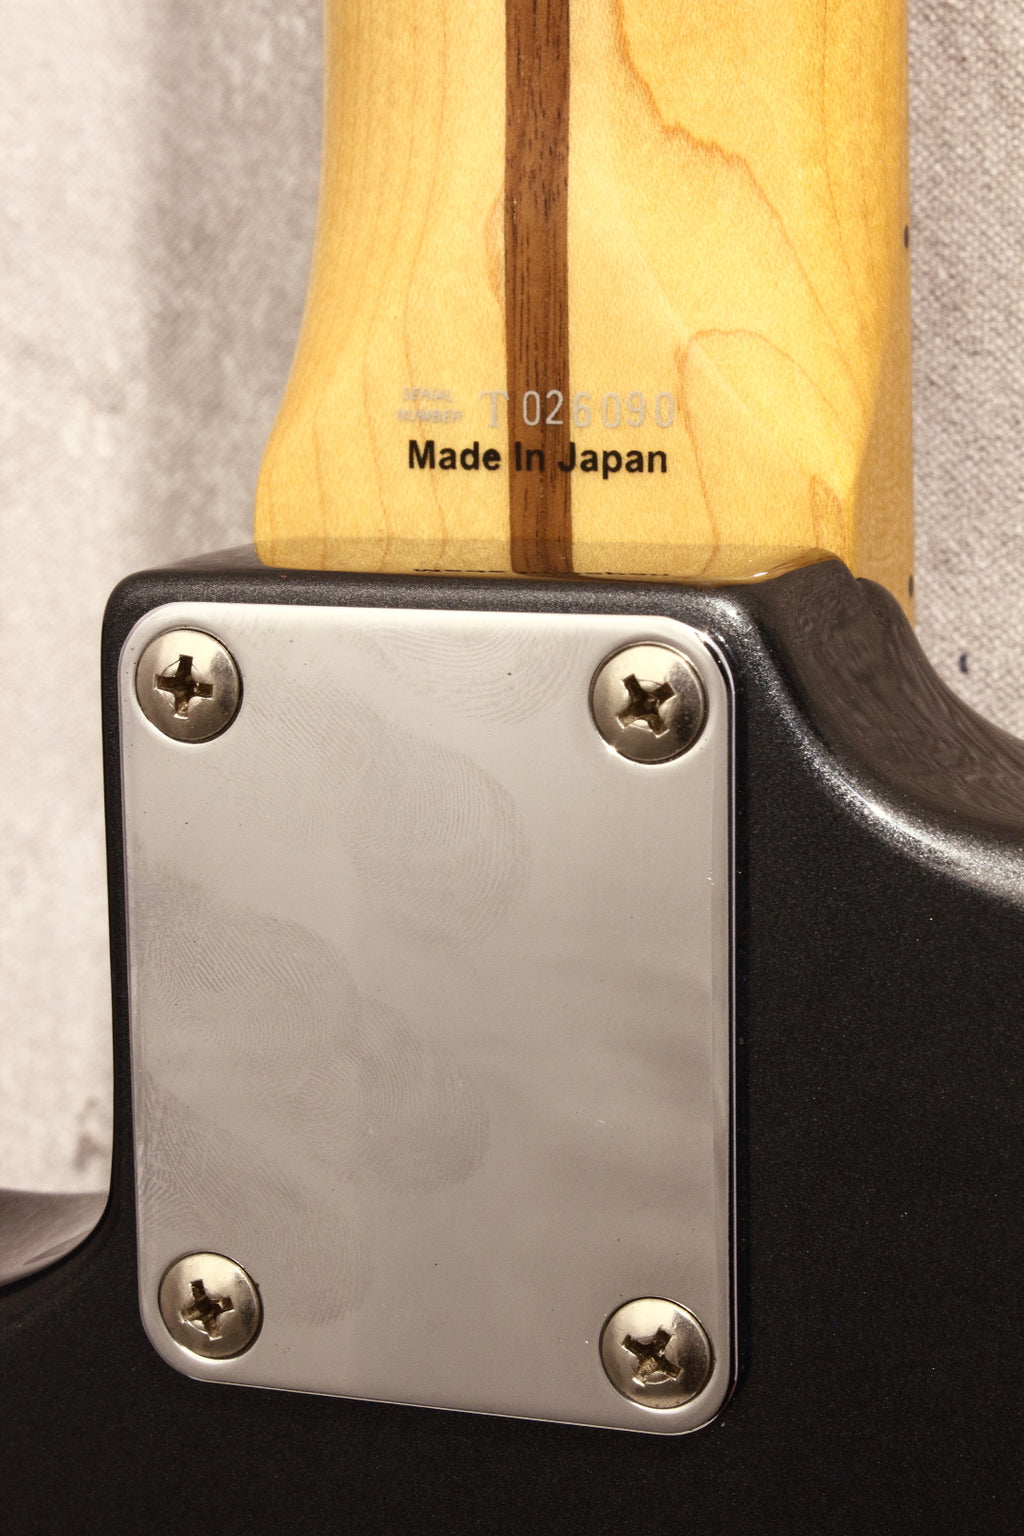 Fender Japan '57 Stratocaster ST57-TX Gunmetal Blue 2008